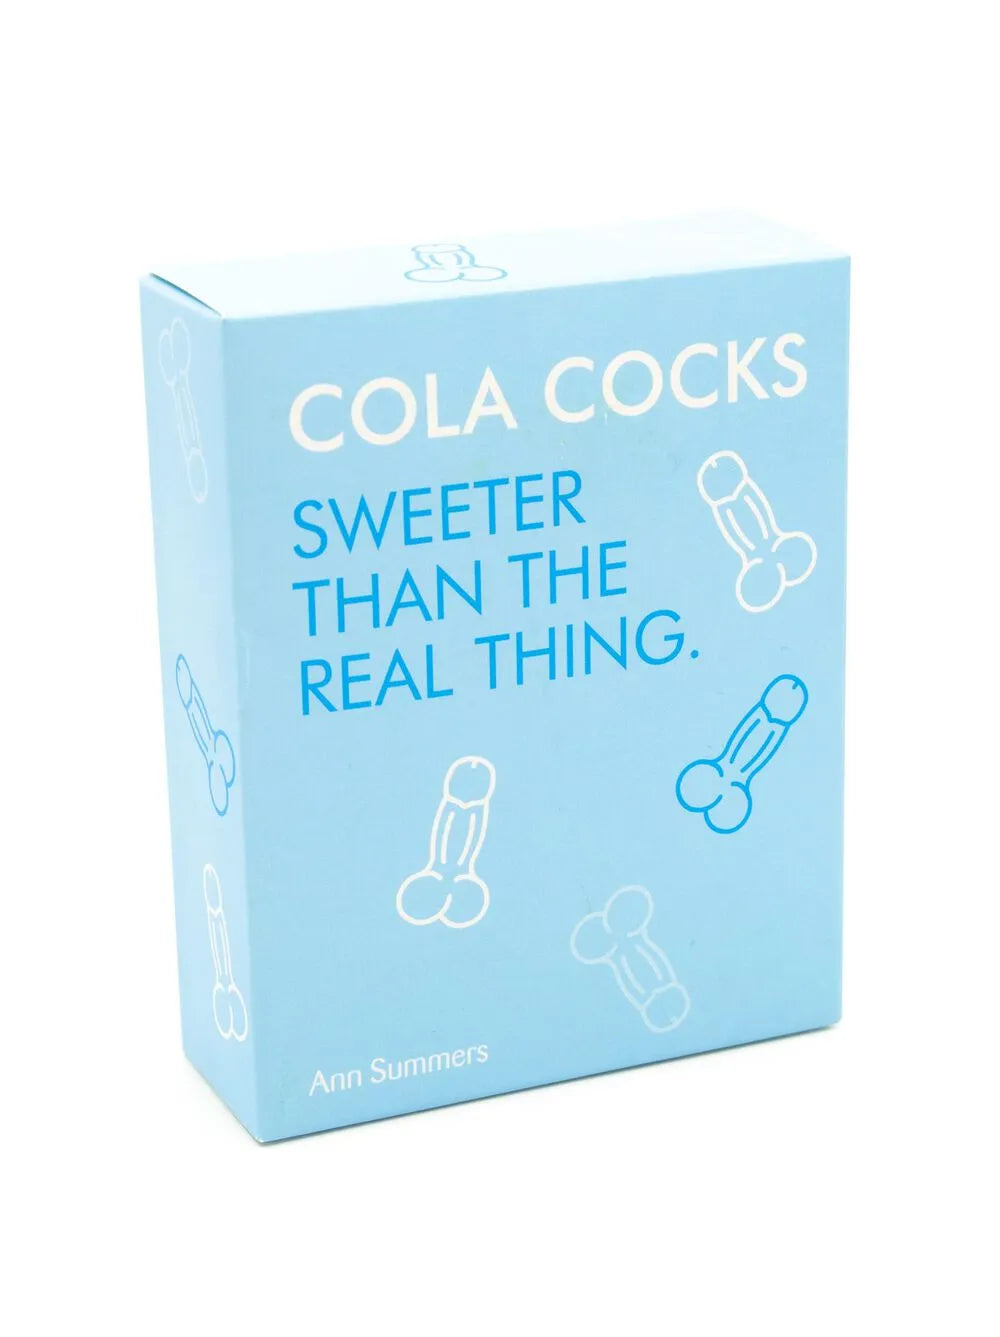 Cola Cocks